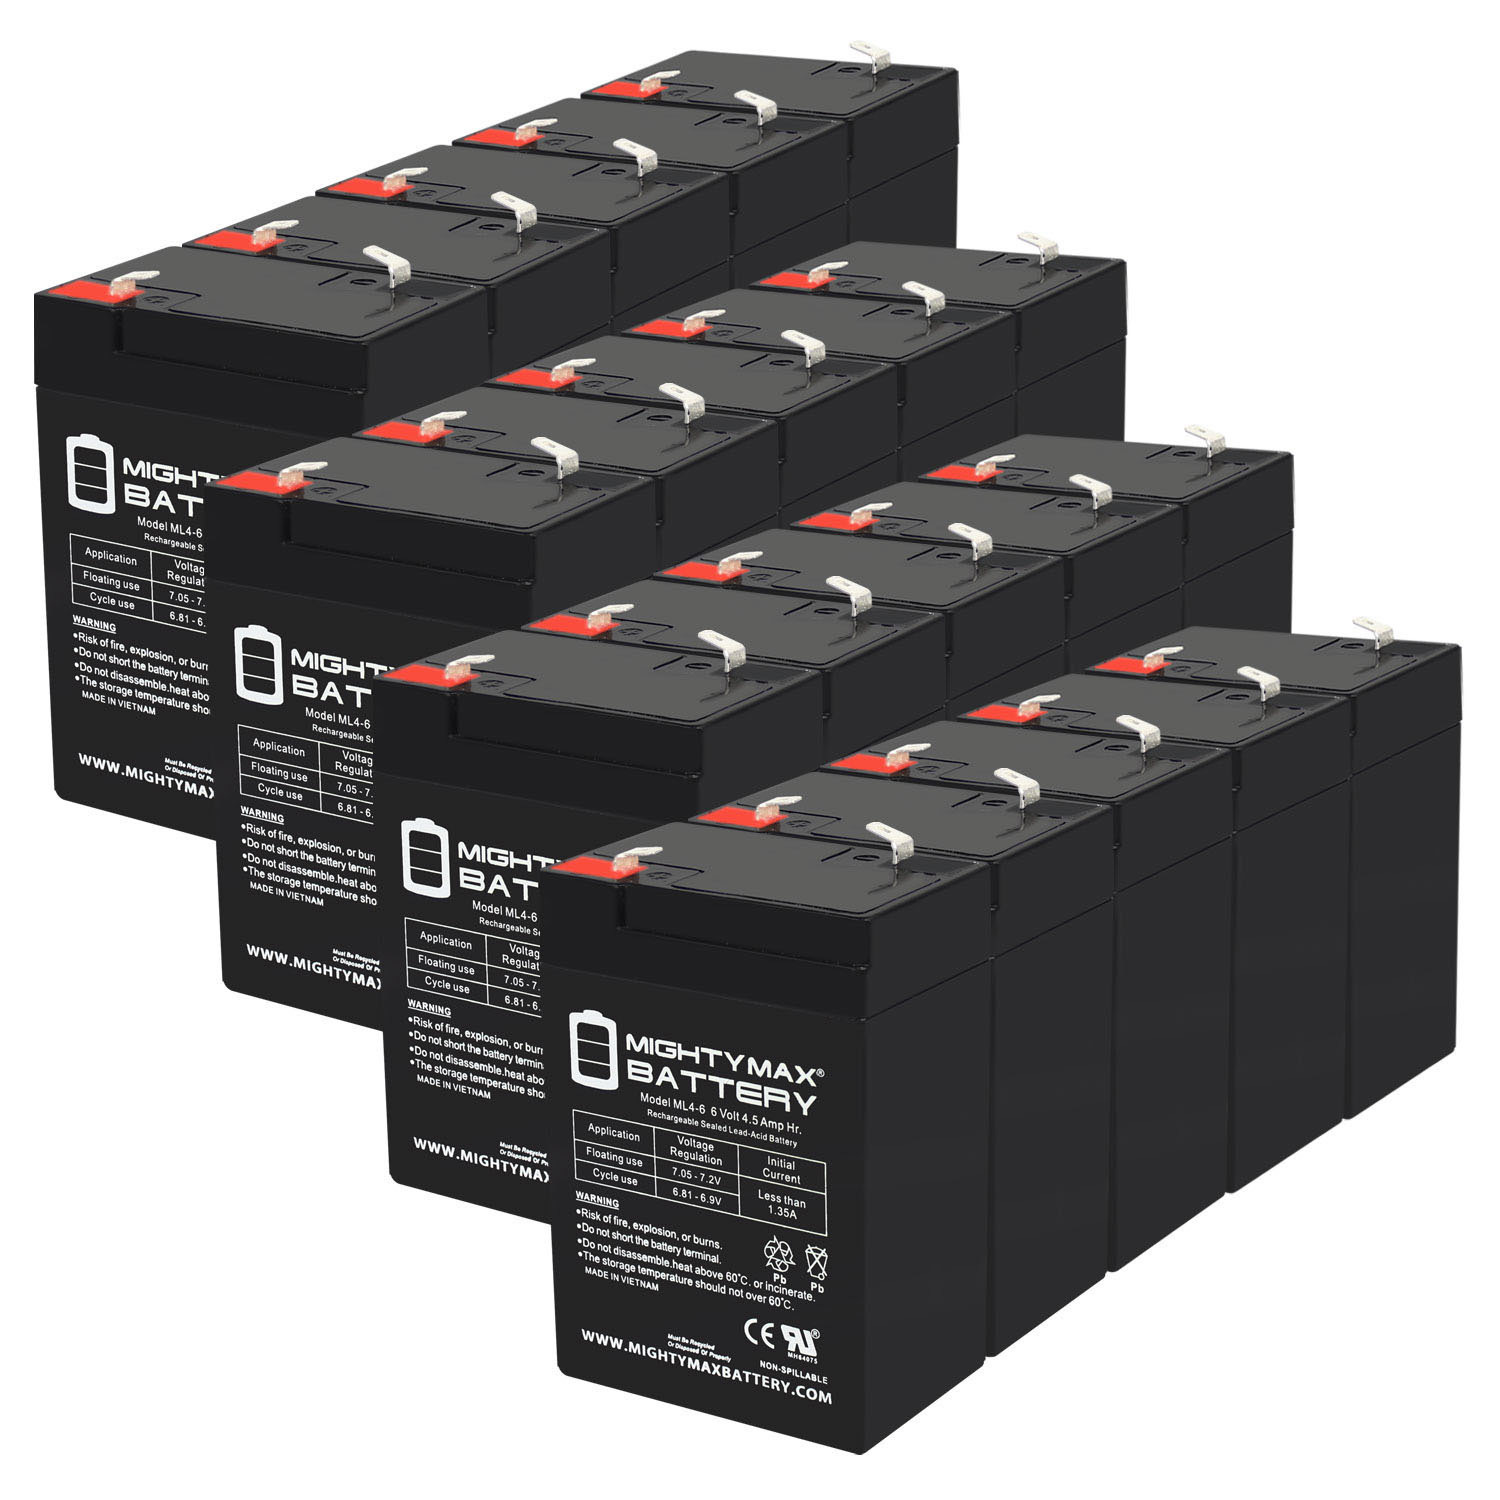 6V 4.5AH SLA Replacement Battery for Dual-Lite CVT3RBI Lighting - 20 Pack